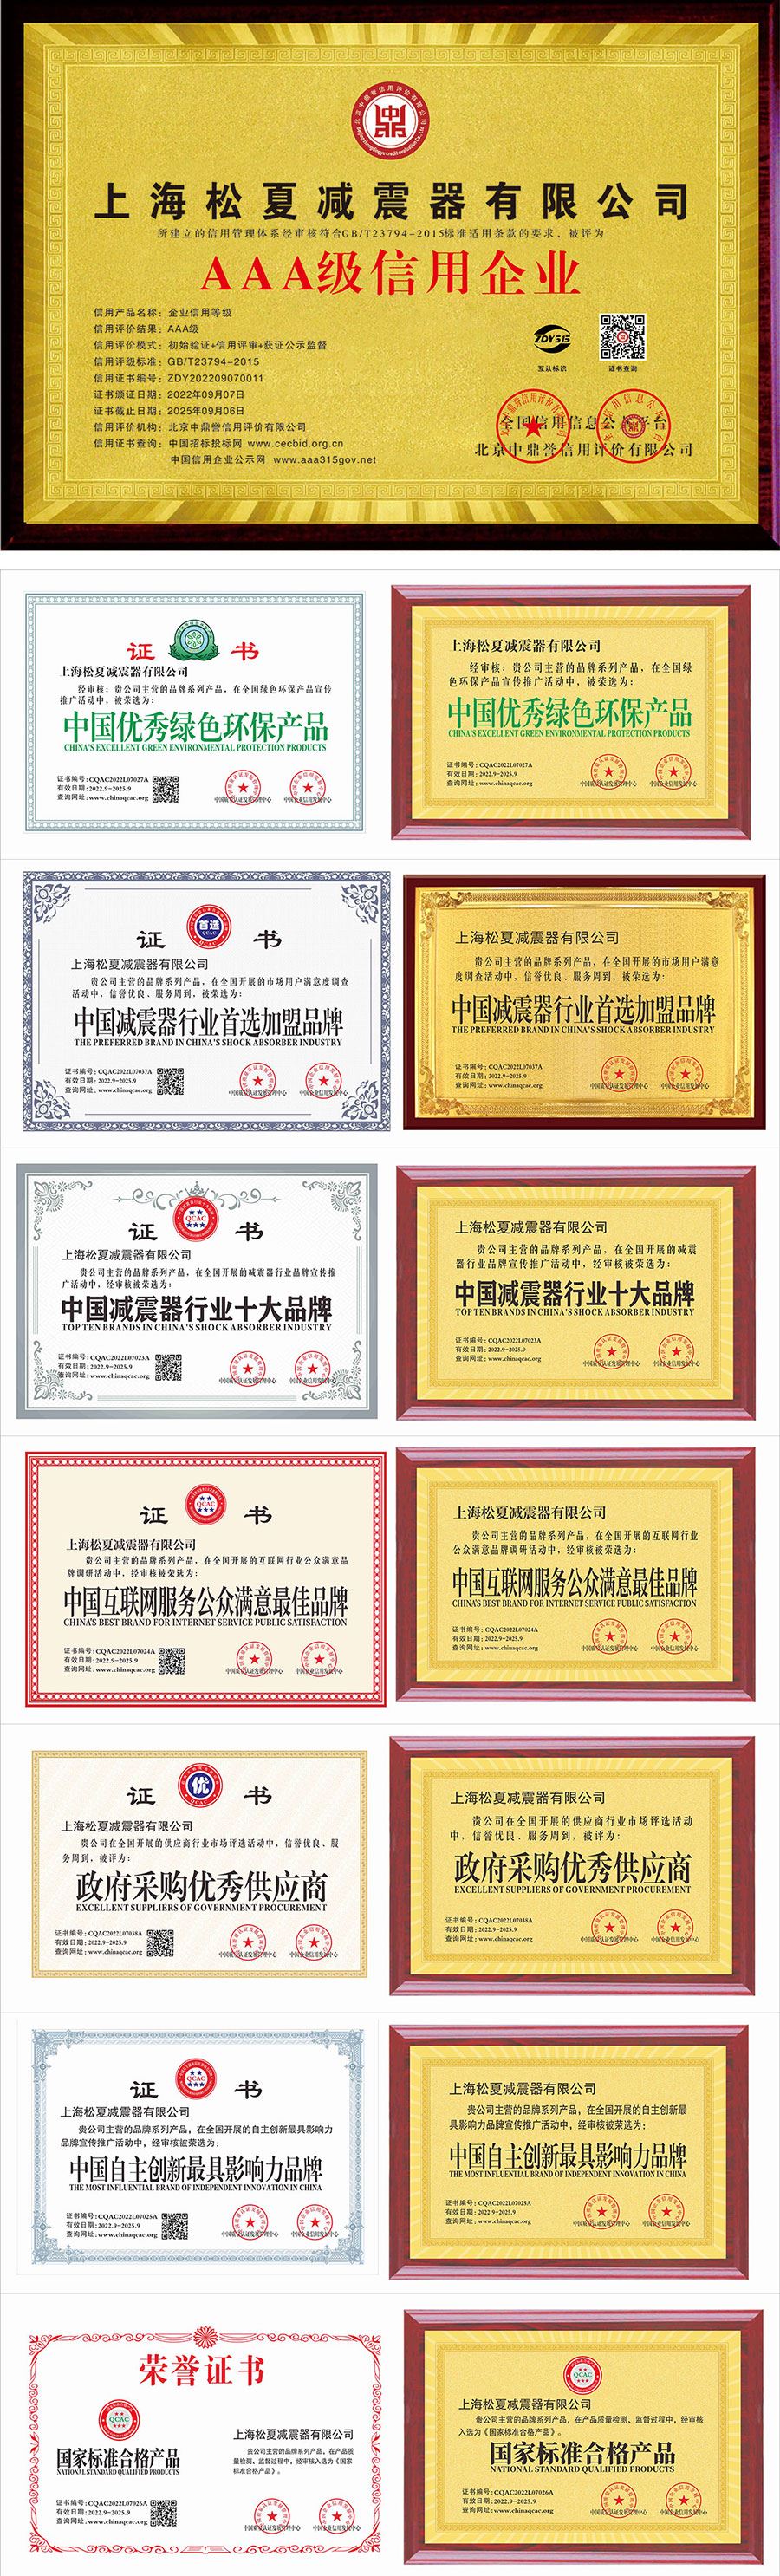 上海博游棋牌减震器有限公司顺达娱乐注册开户